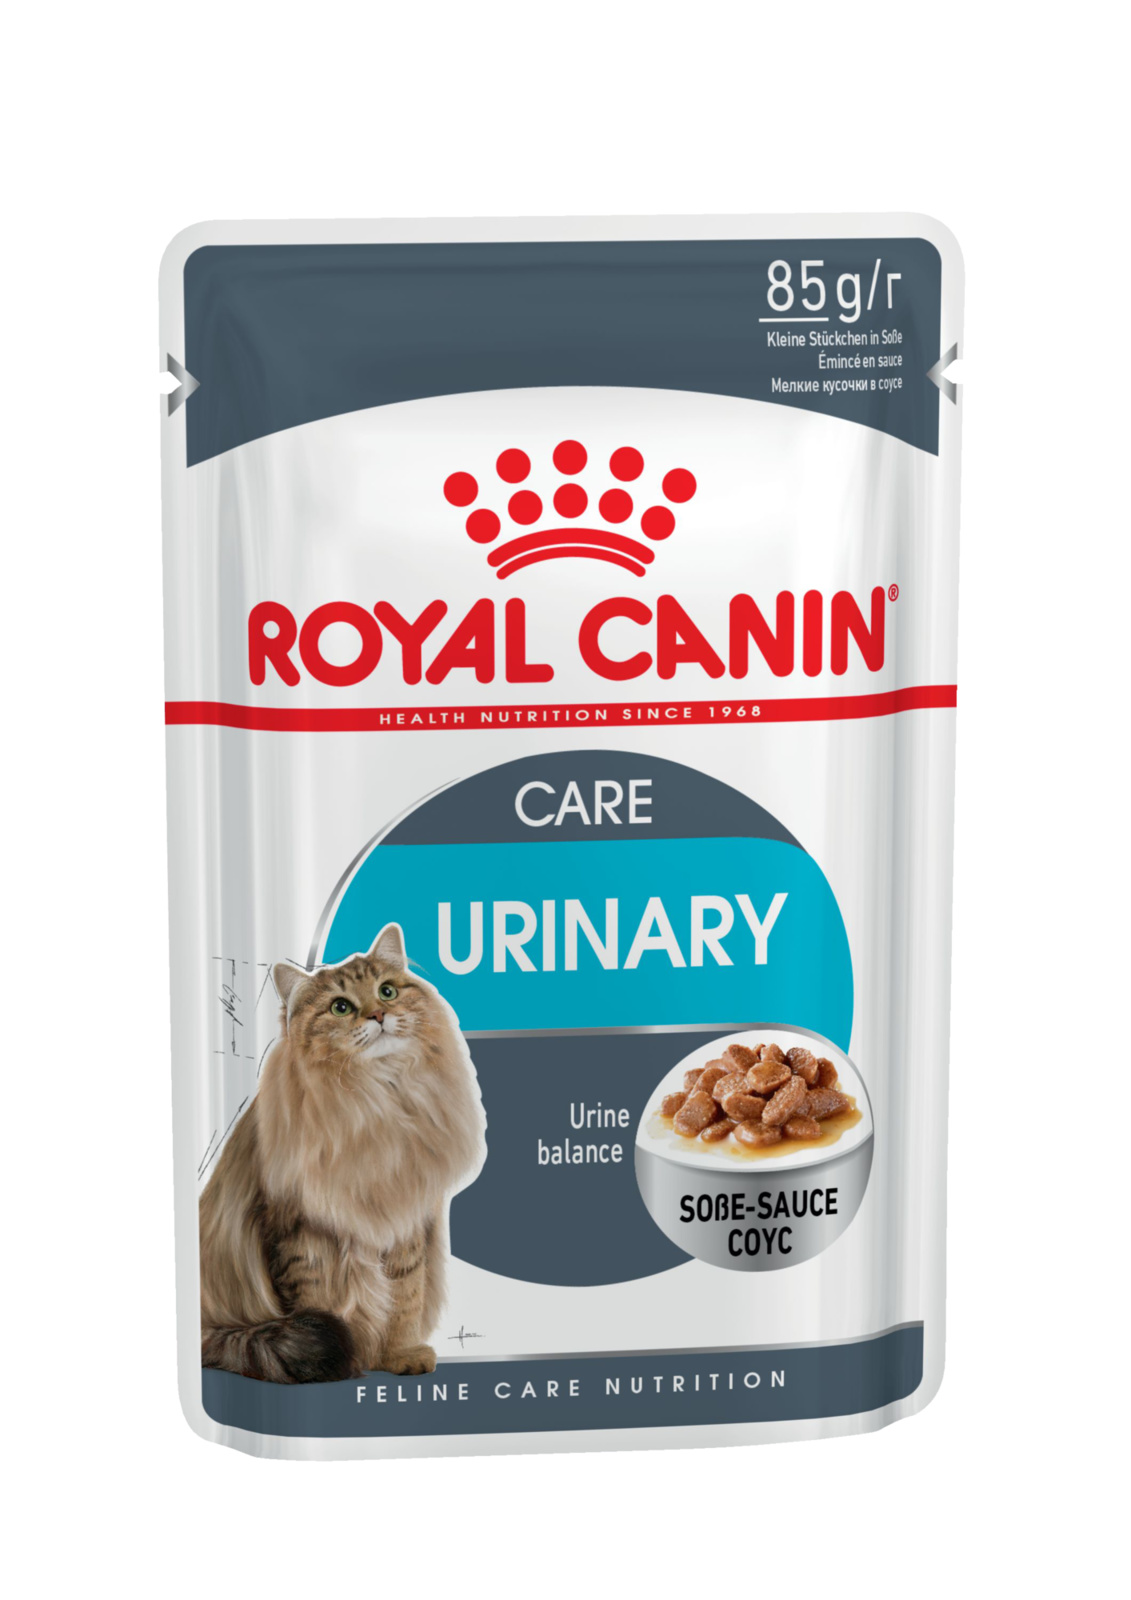 Royal Canin кусочки в соусе для профилактики МКБ (85 г)